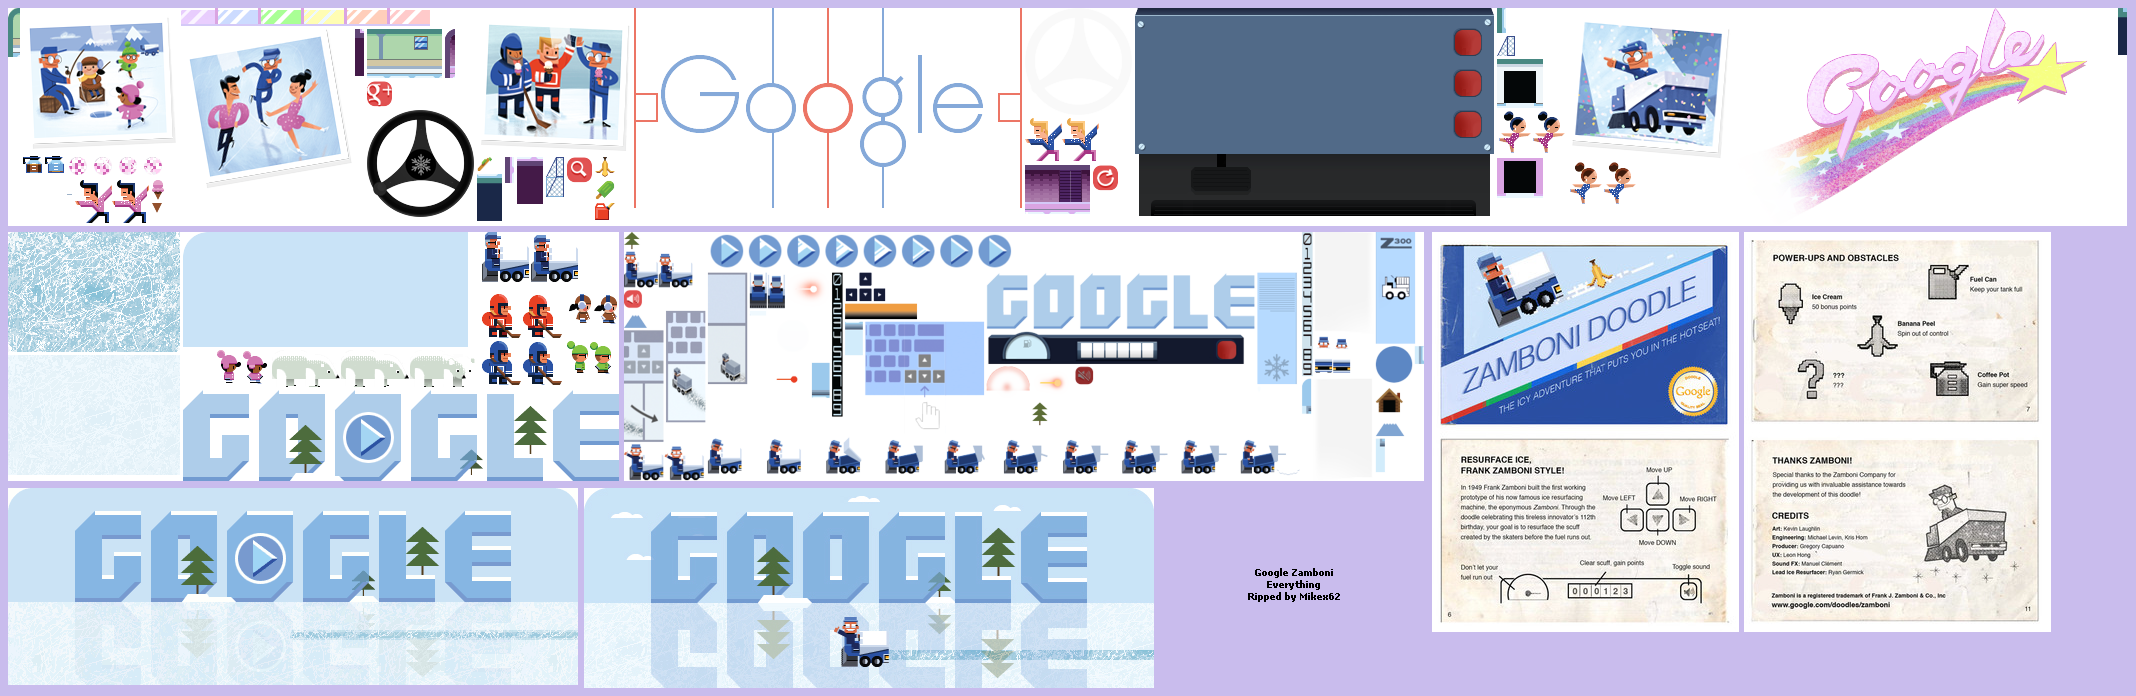 Google Doodles - General Sprites